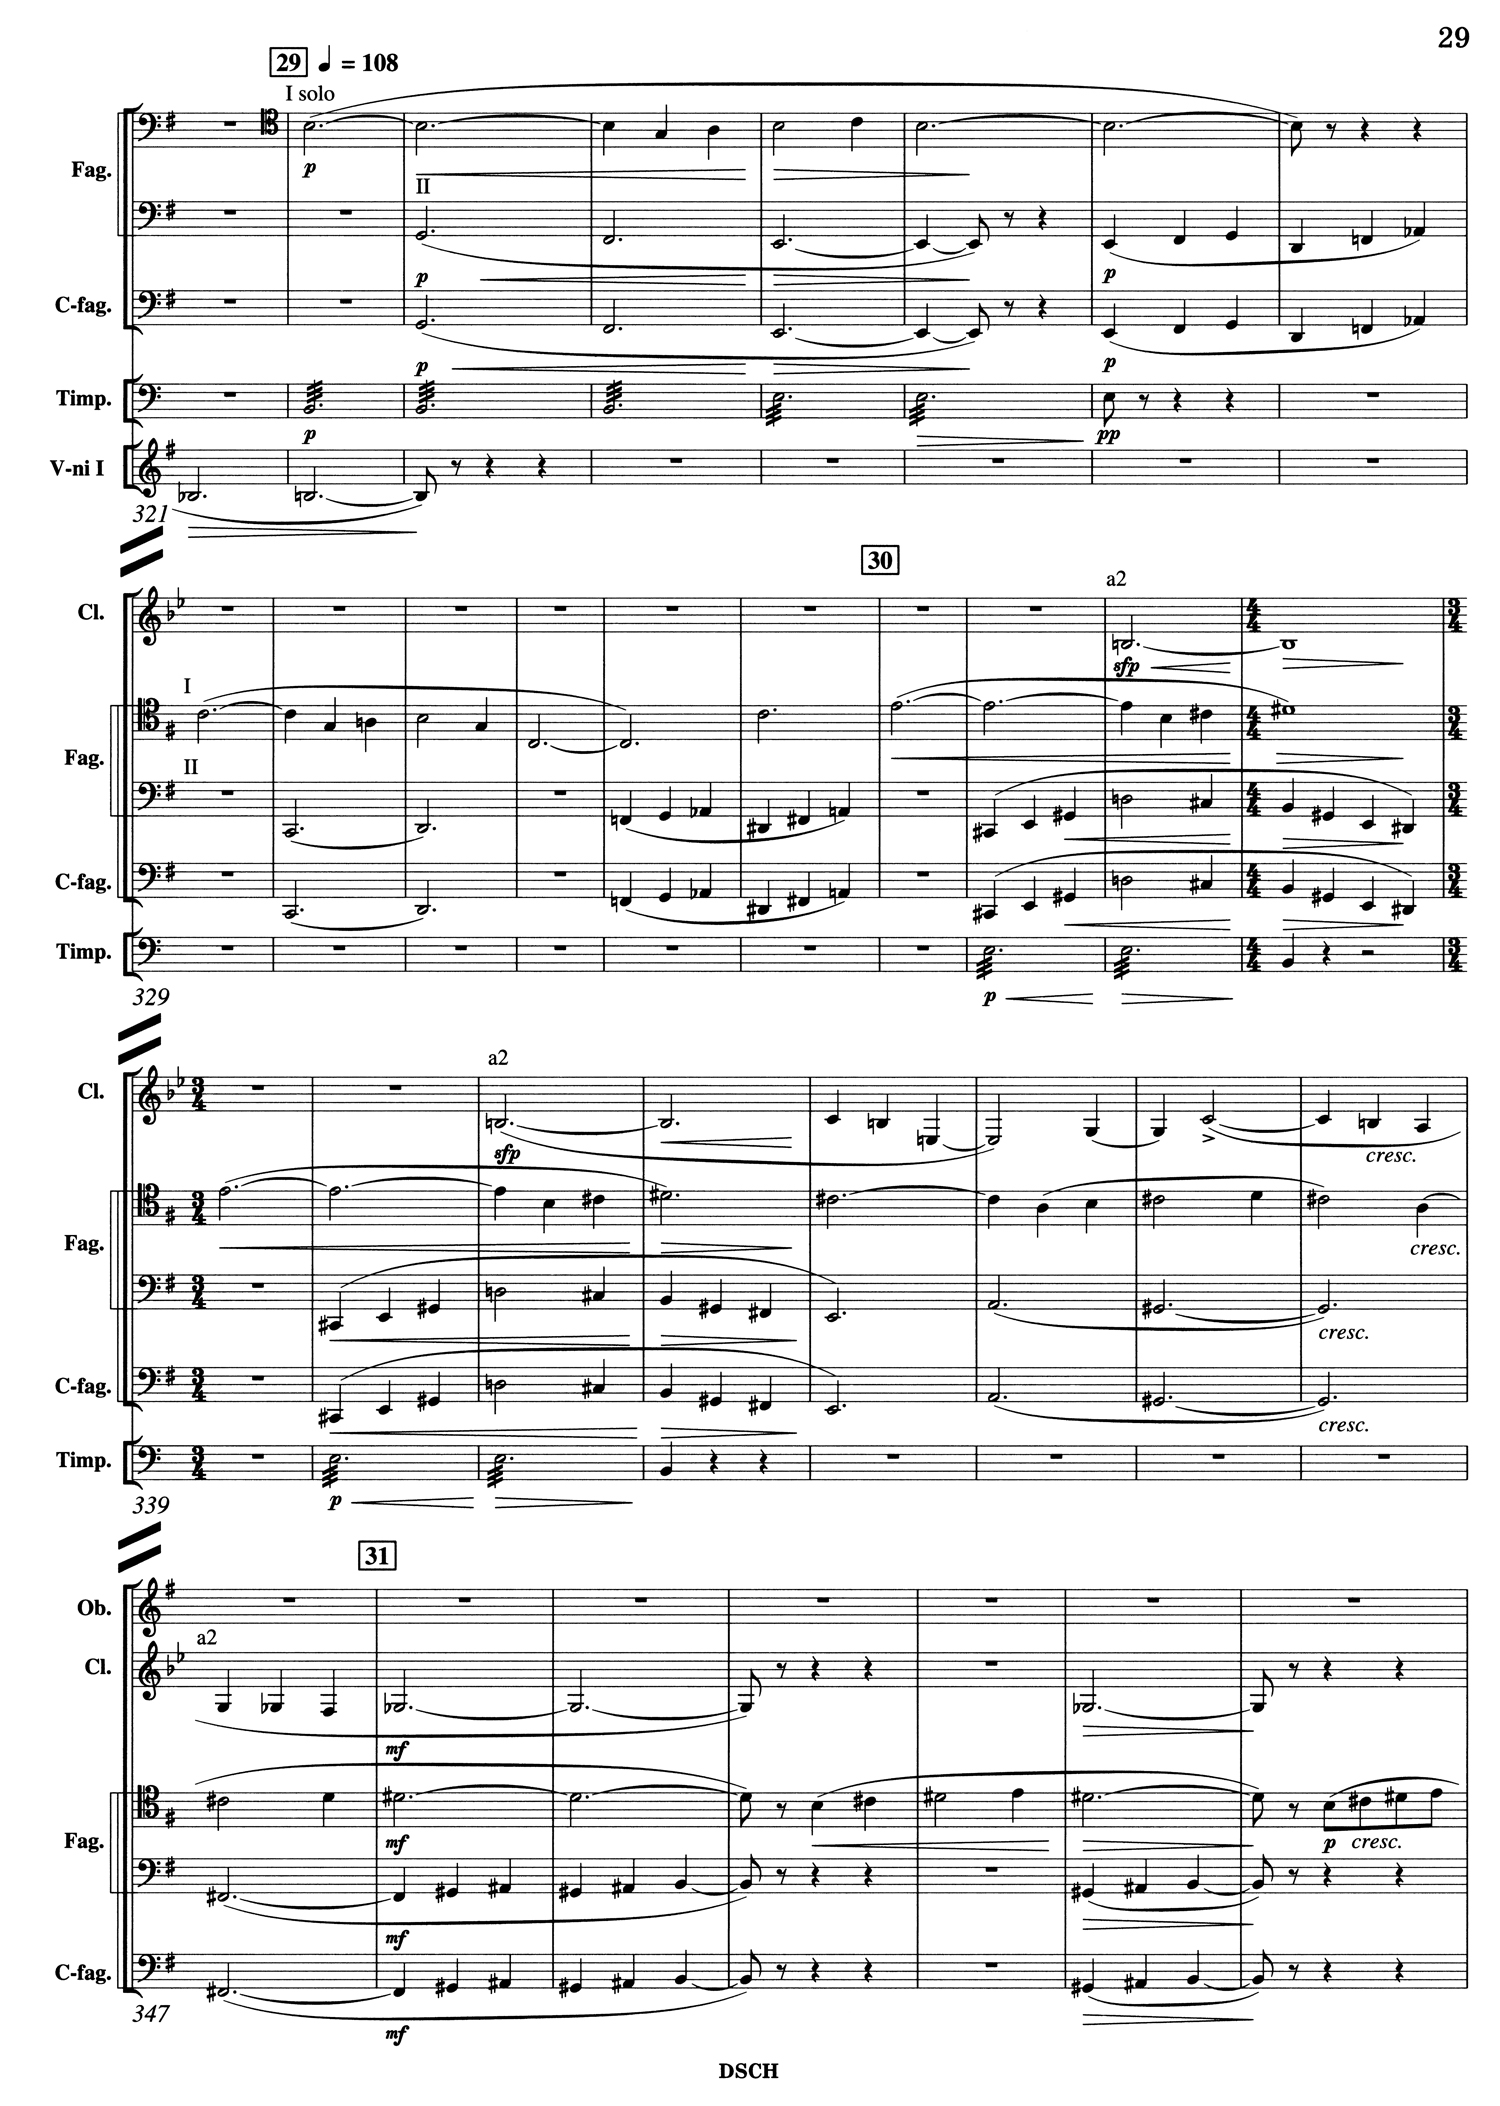 Shostakovich 10 Mvt 1 Score Page 1.jpg